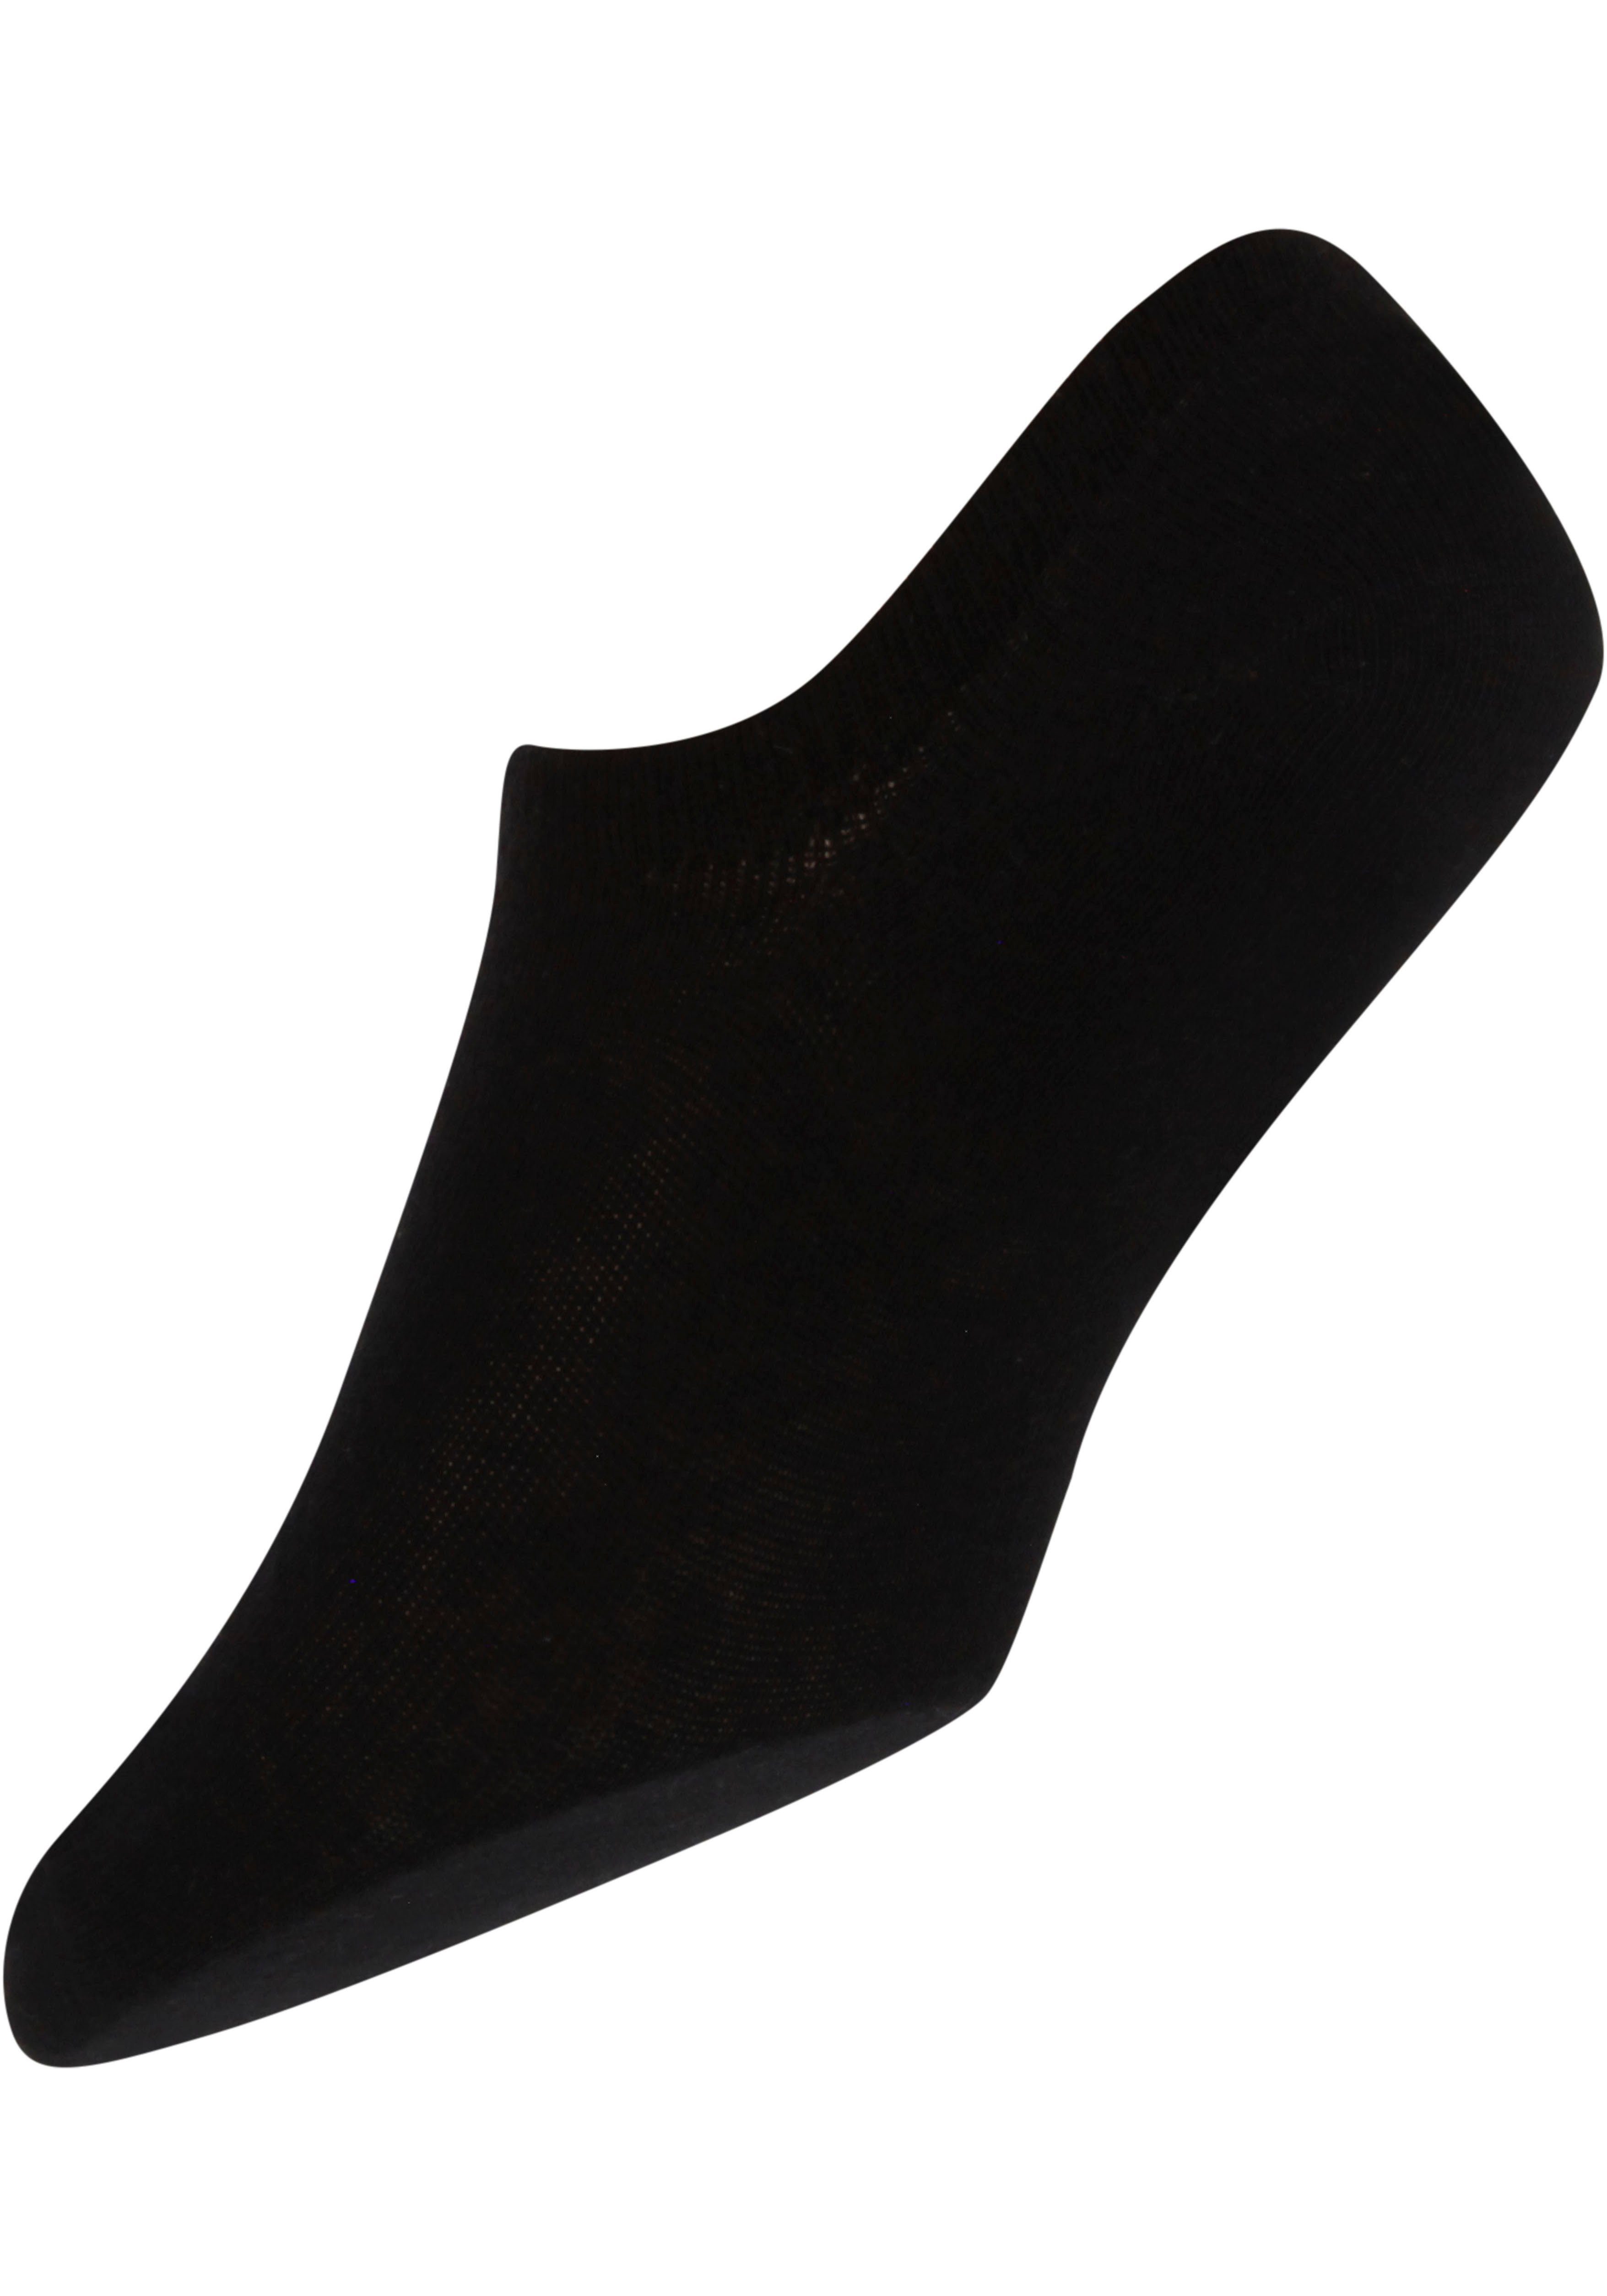 Socks Unisex Invisible Black/White/Grey Marl 3-Paar) CHRIS Sneakersocken (Packung, Lee Lee®